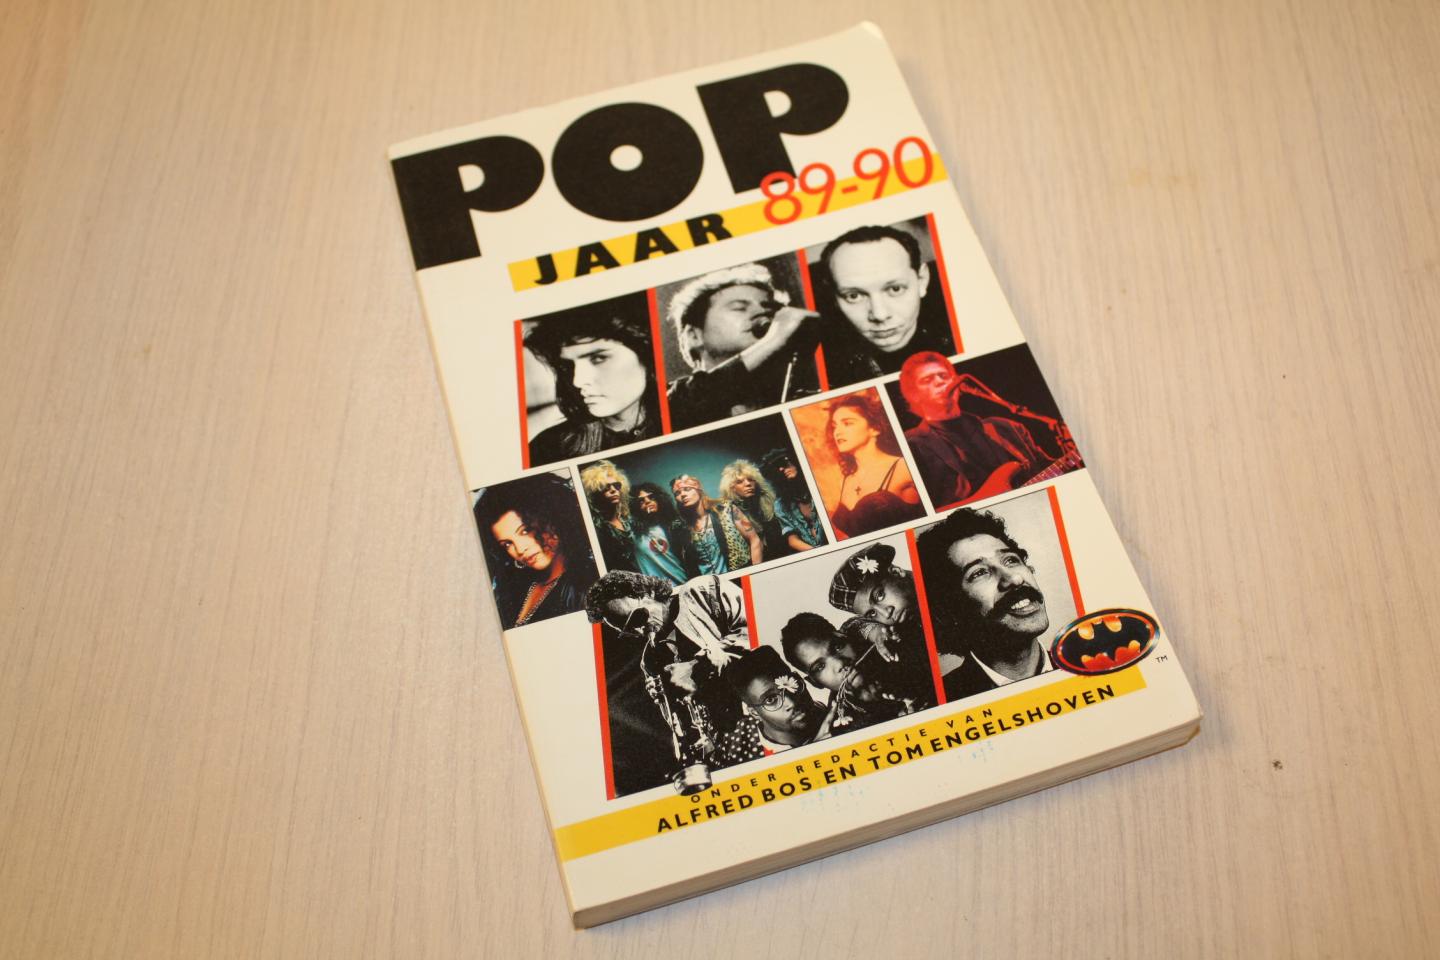 Alfred Bos Tom Engelshoven - Popjaar / 89-90 / druk 1